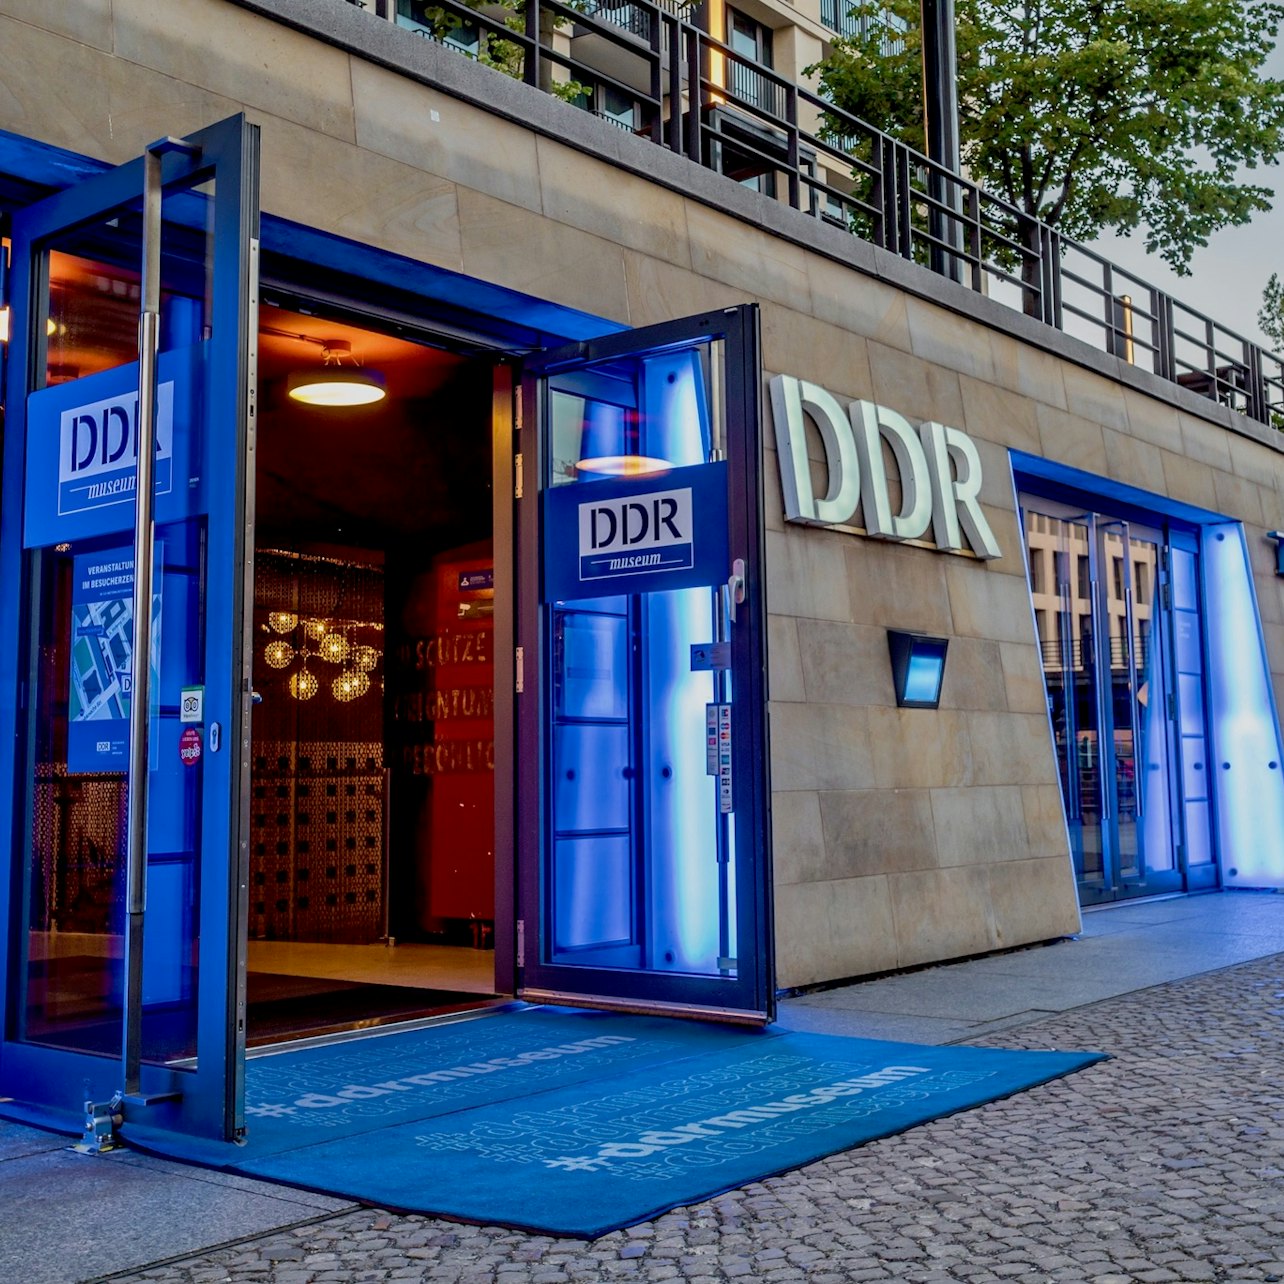 DDR Museum - Alloggi in Berlino